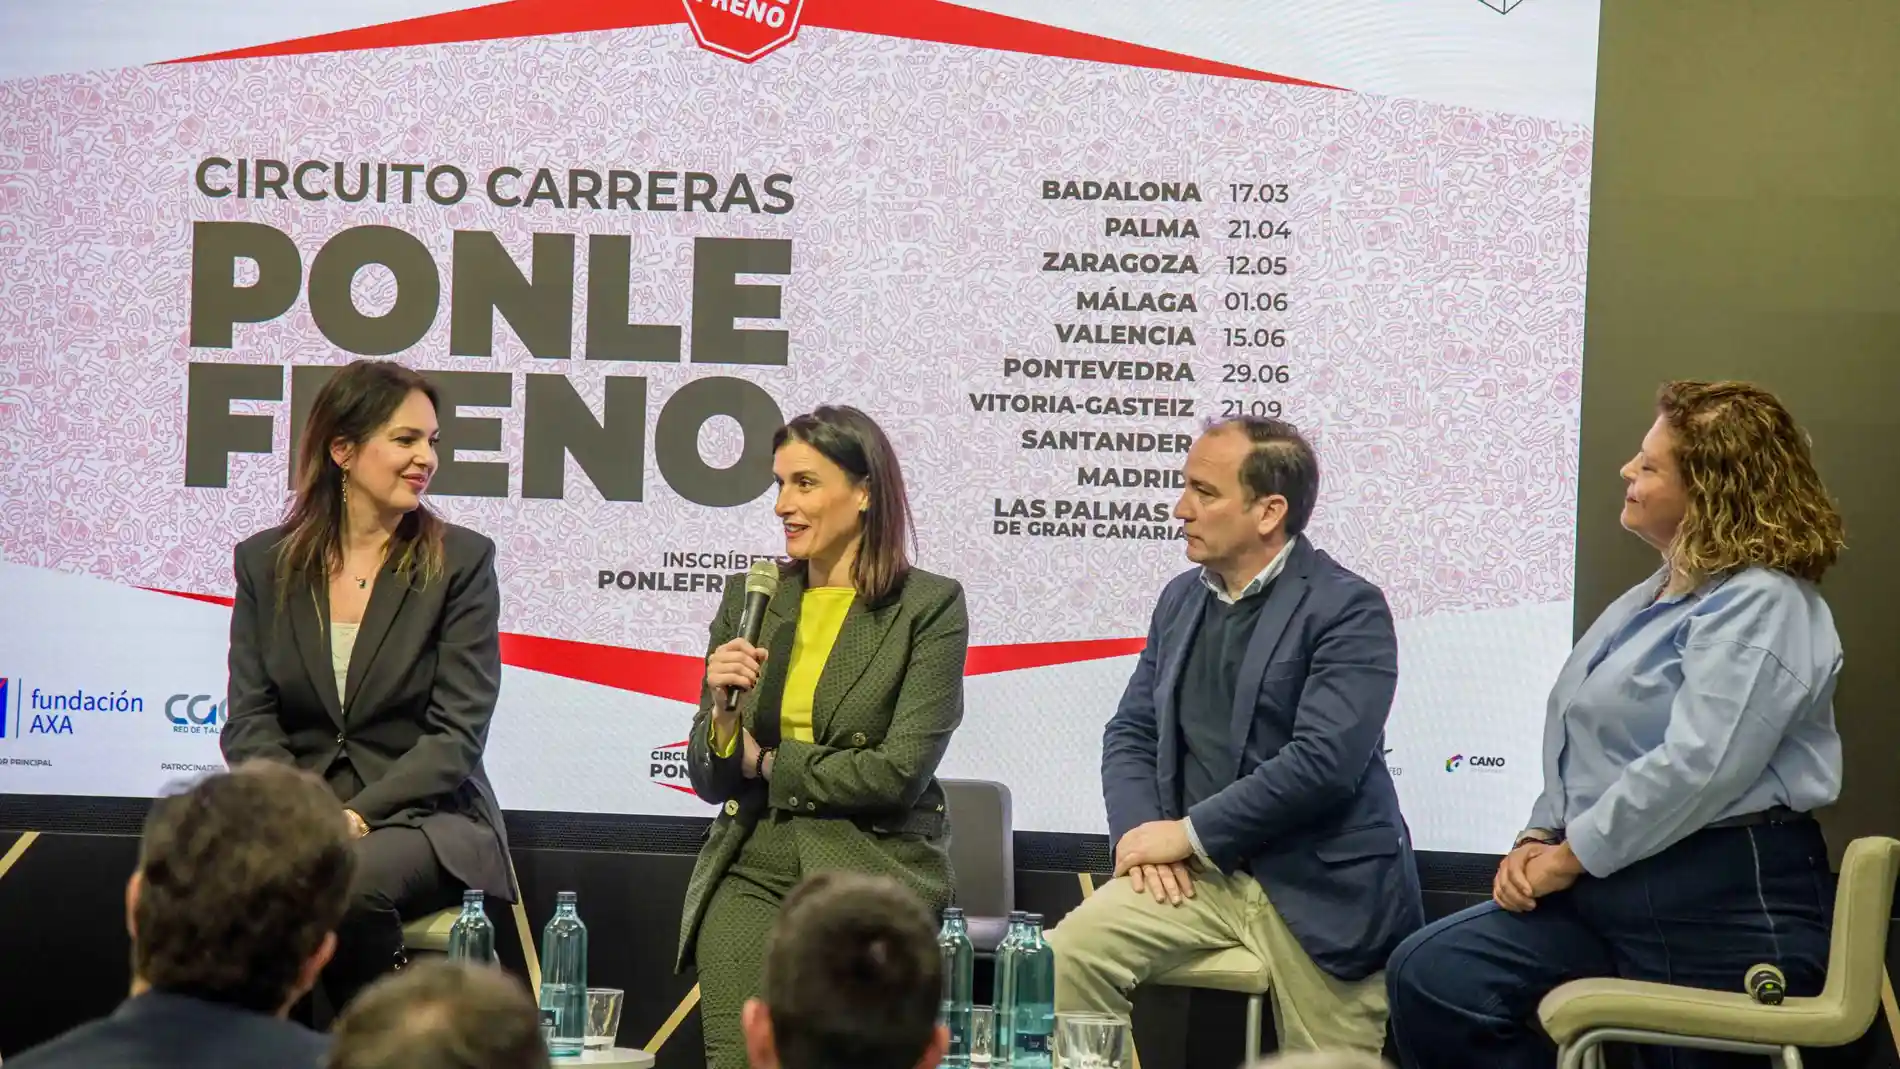 Santander acogerá una nueva edición de la carrera solidaria ‘Ponle freno’ el 29 de septiembre